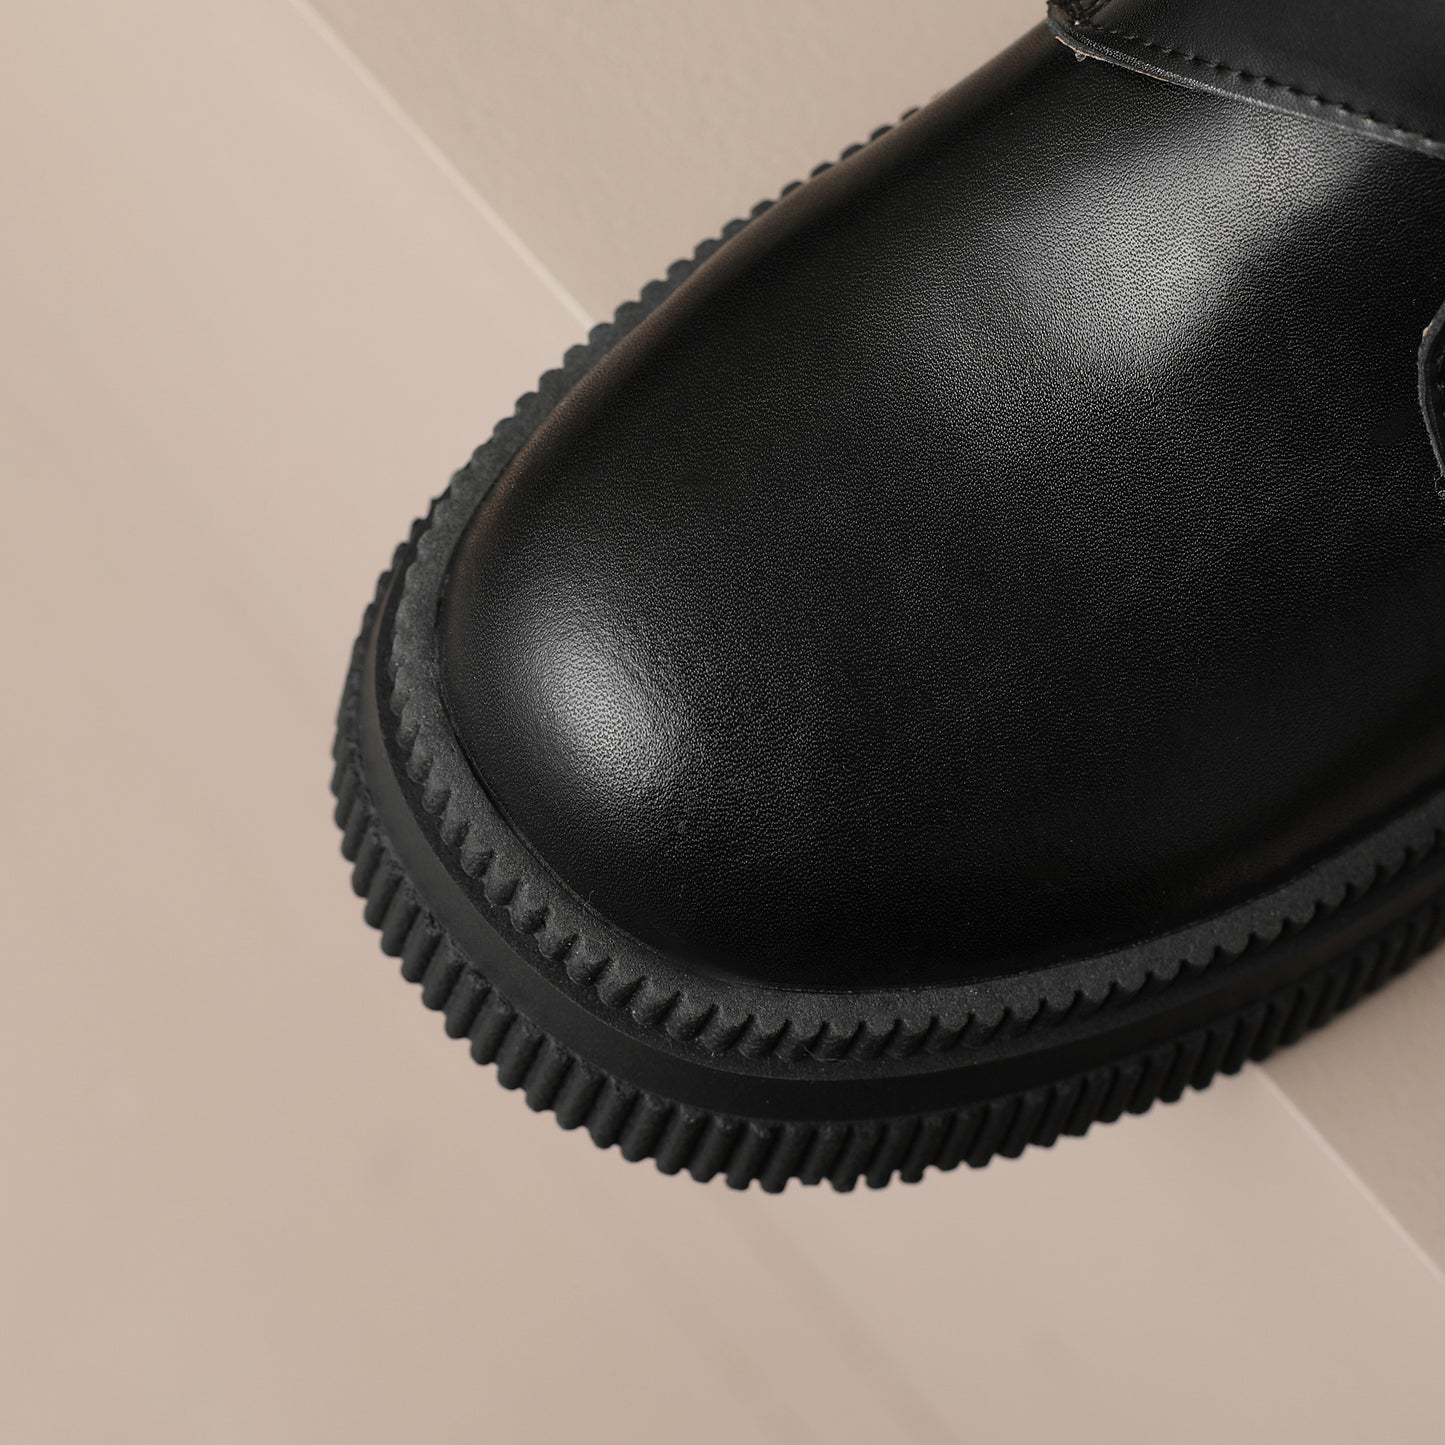 TinaCus Handmade Women's Genuine Leather Side Zip Buckle Round Toe Low Block Heel Platform Boots